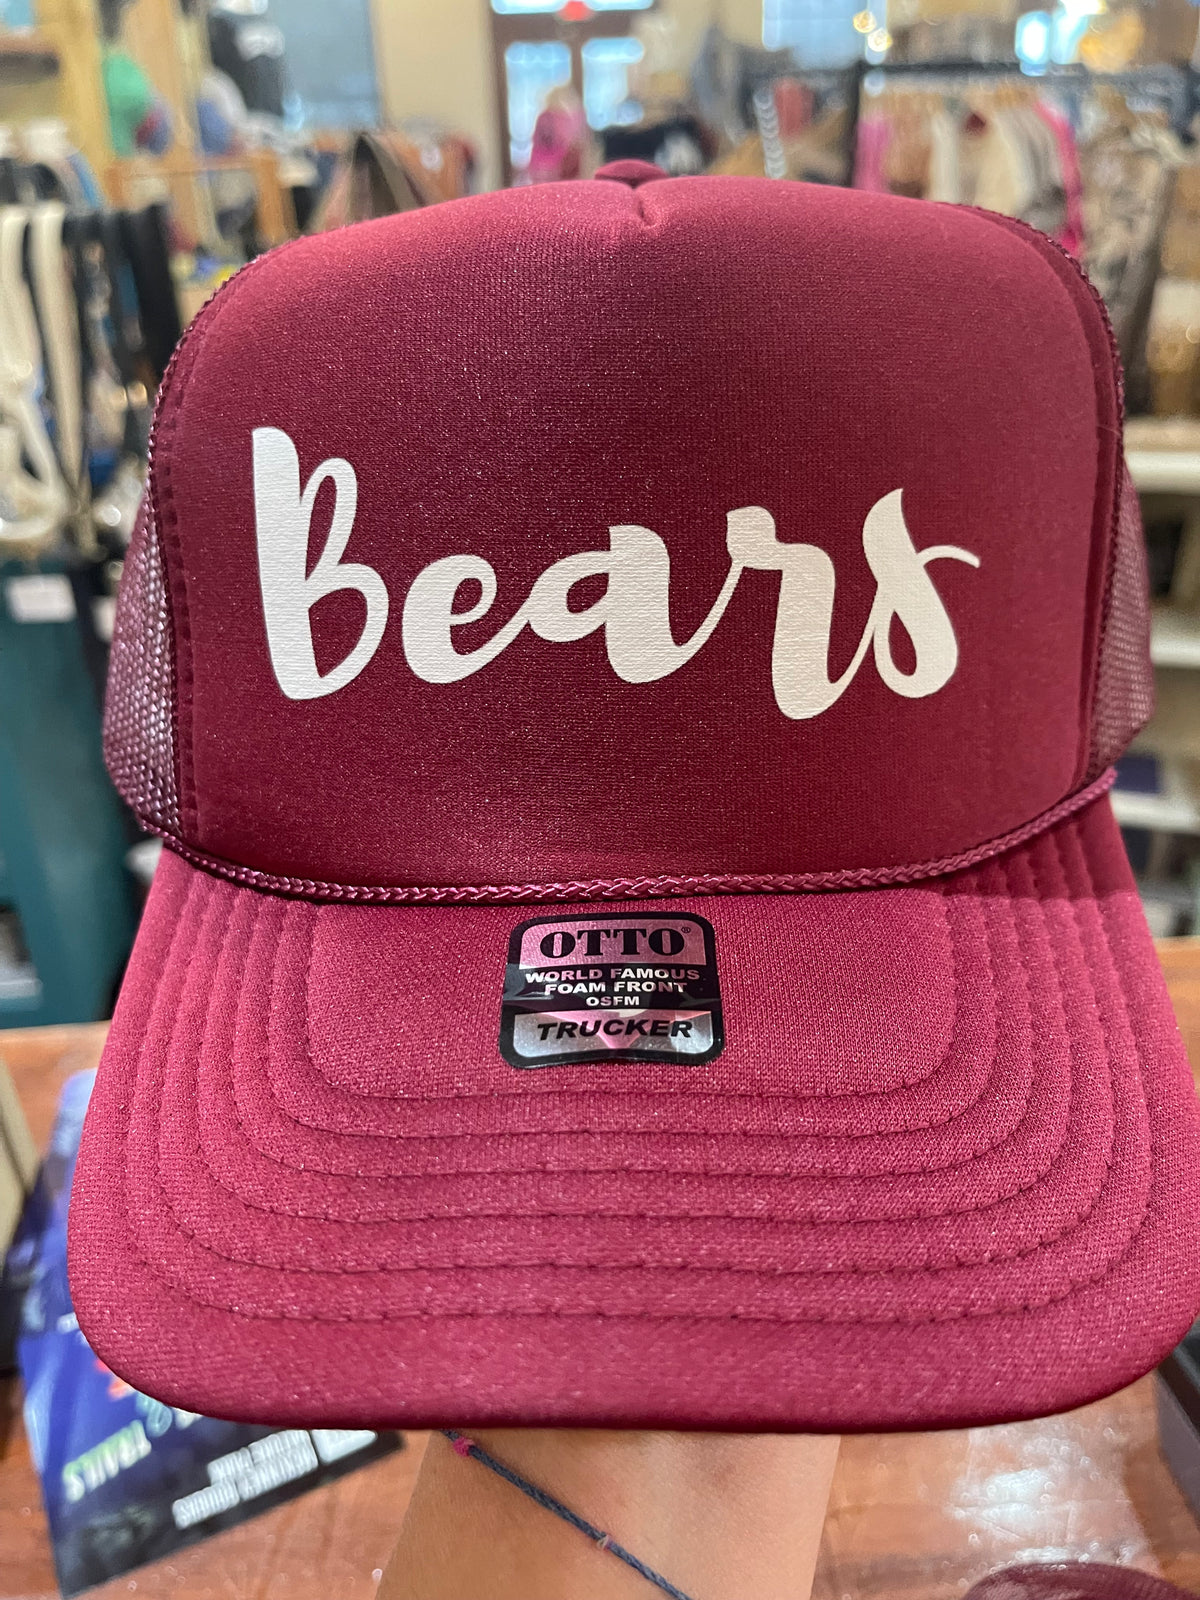 Bears Trucker Hat